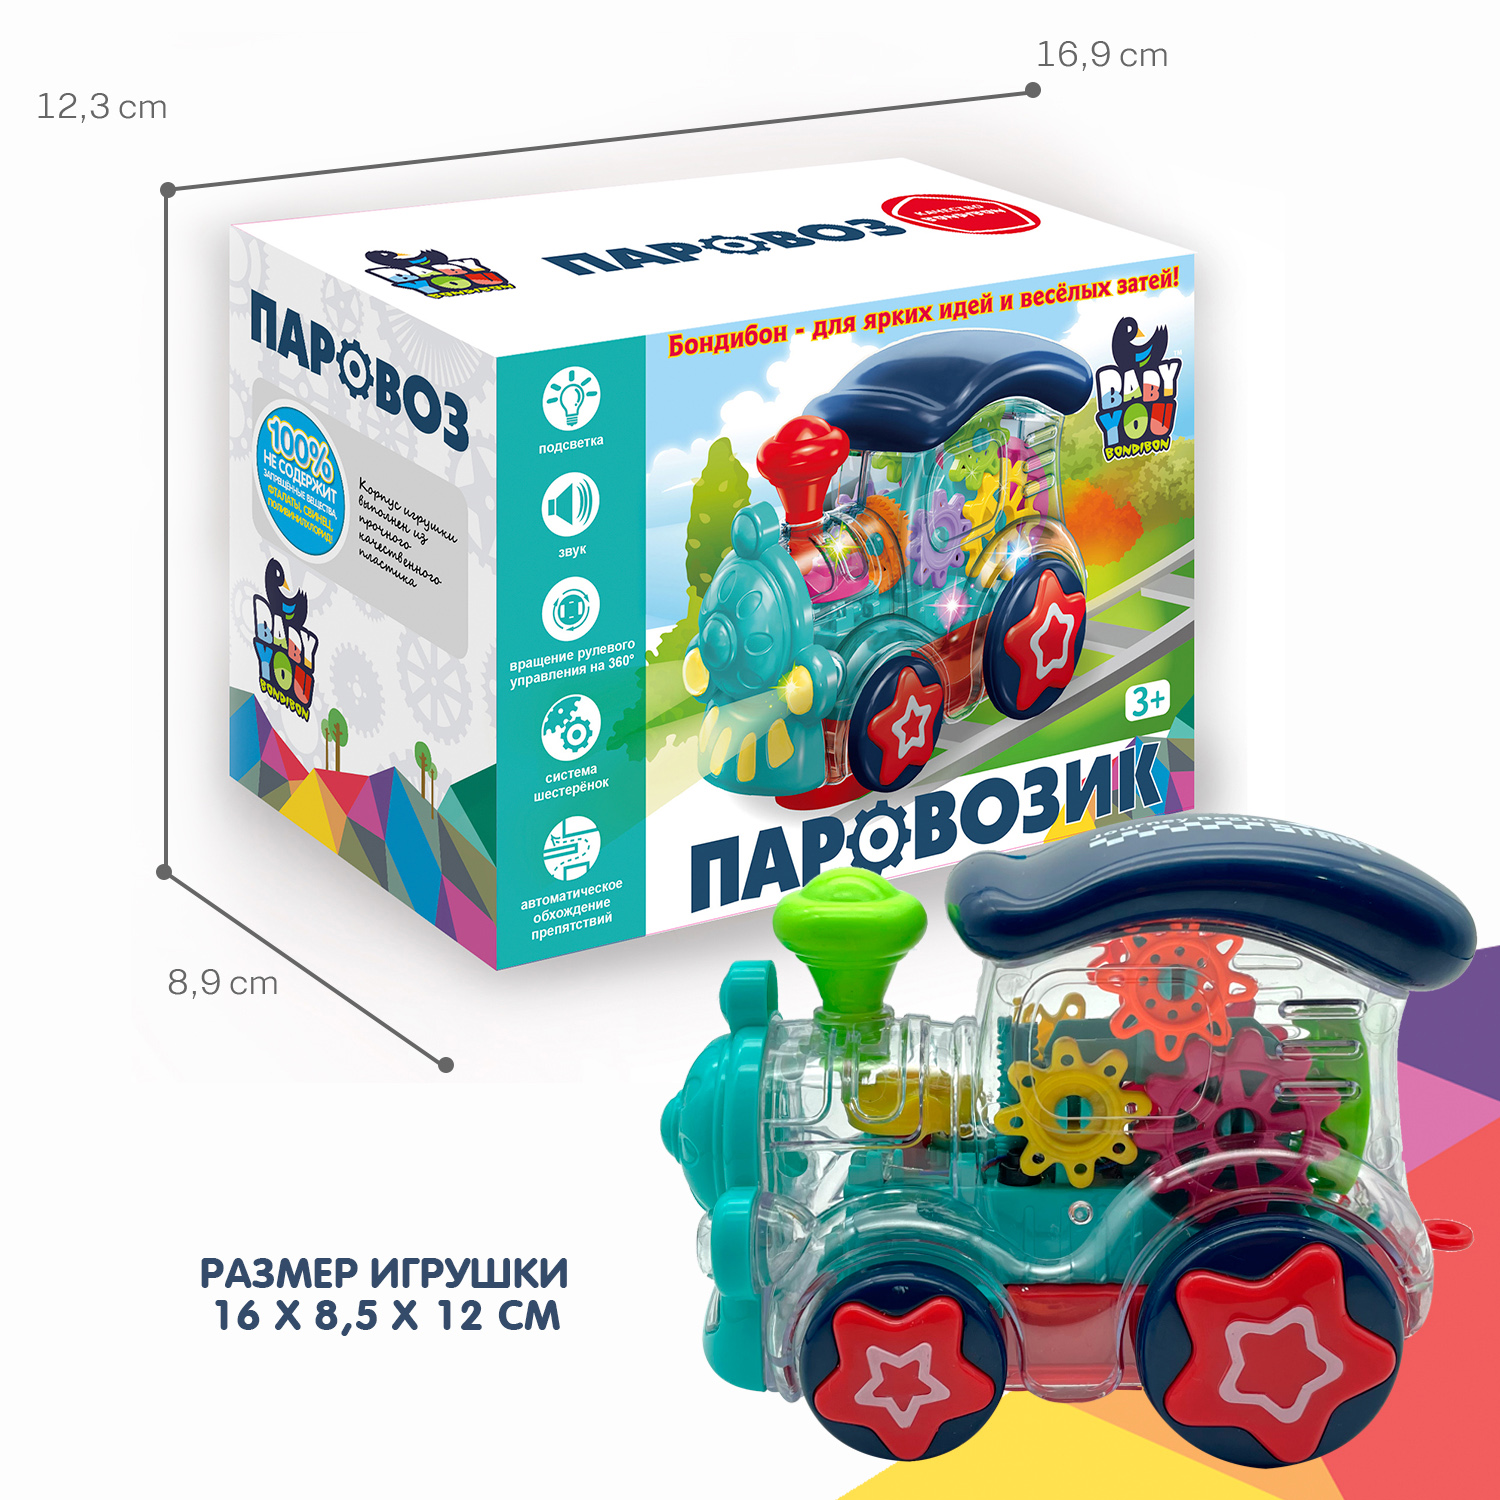 Музыкальная игрушка BONDIBON Паровозик с шестеренками со световыми эффектами и прозрачным корпусом серия Baby You - фото 6